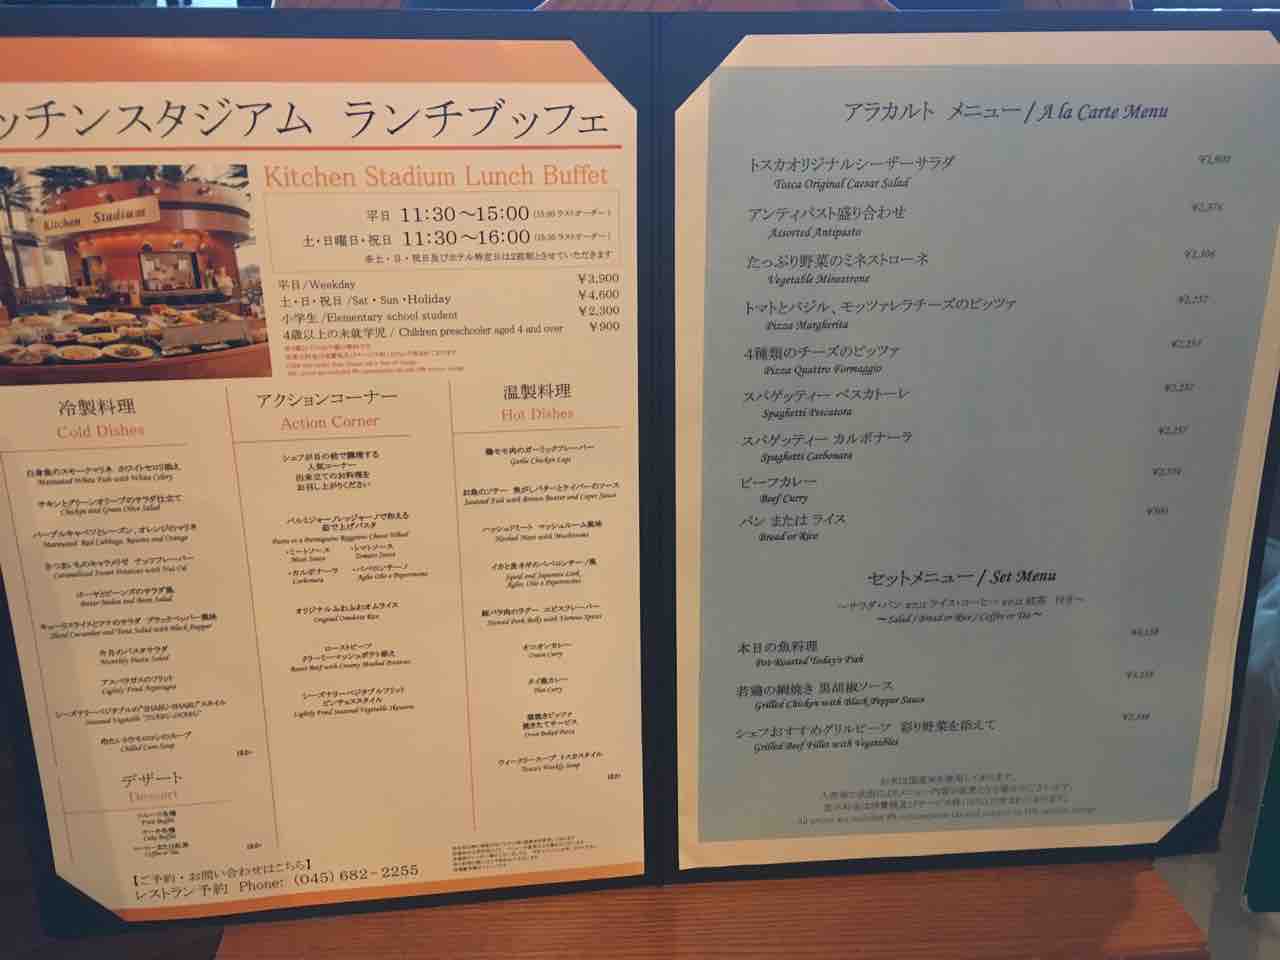 みなとみらい カフェ トスカでランチブッフェ 横浜ベイホテル東急 炭酸ウーロン茶